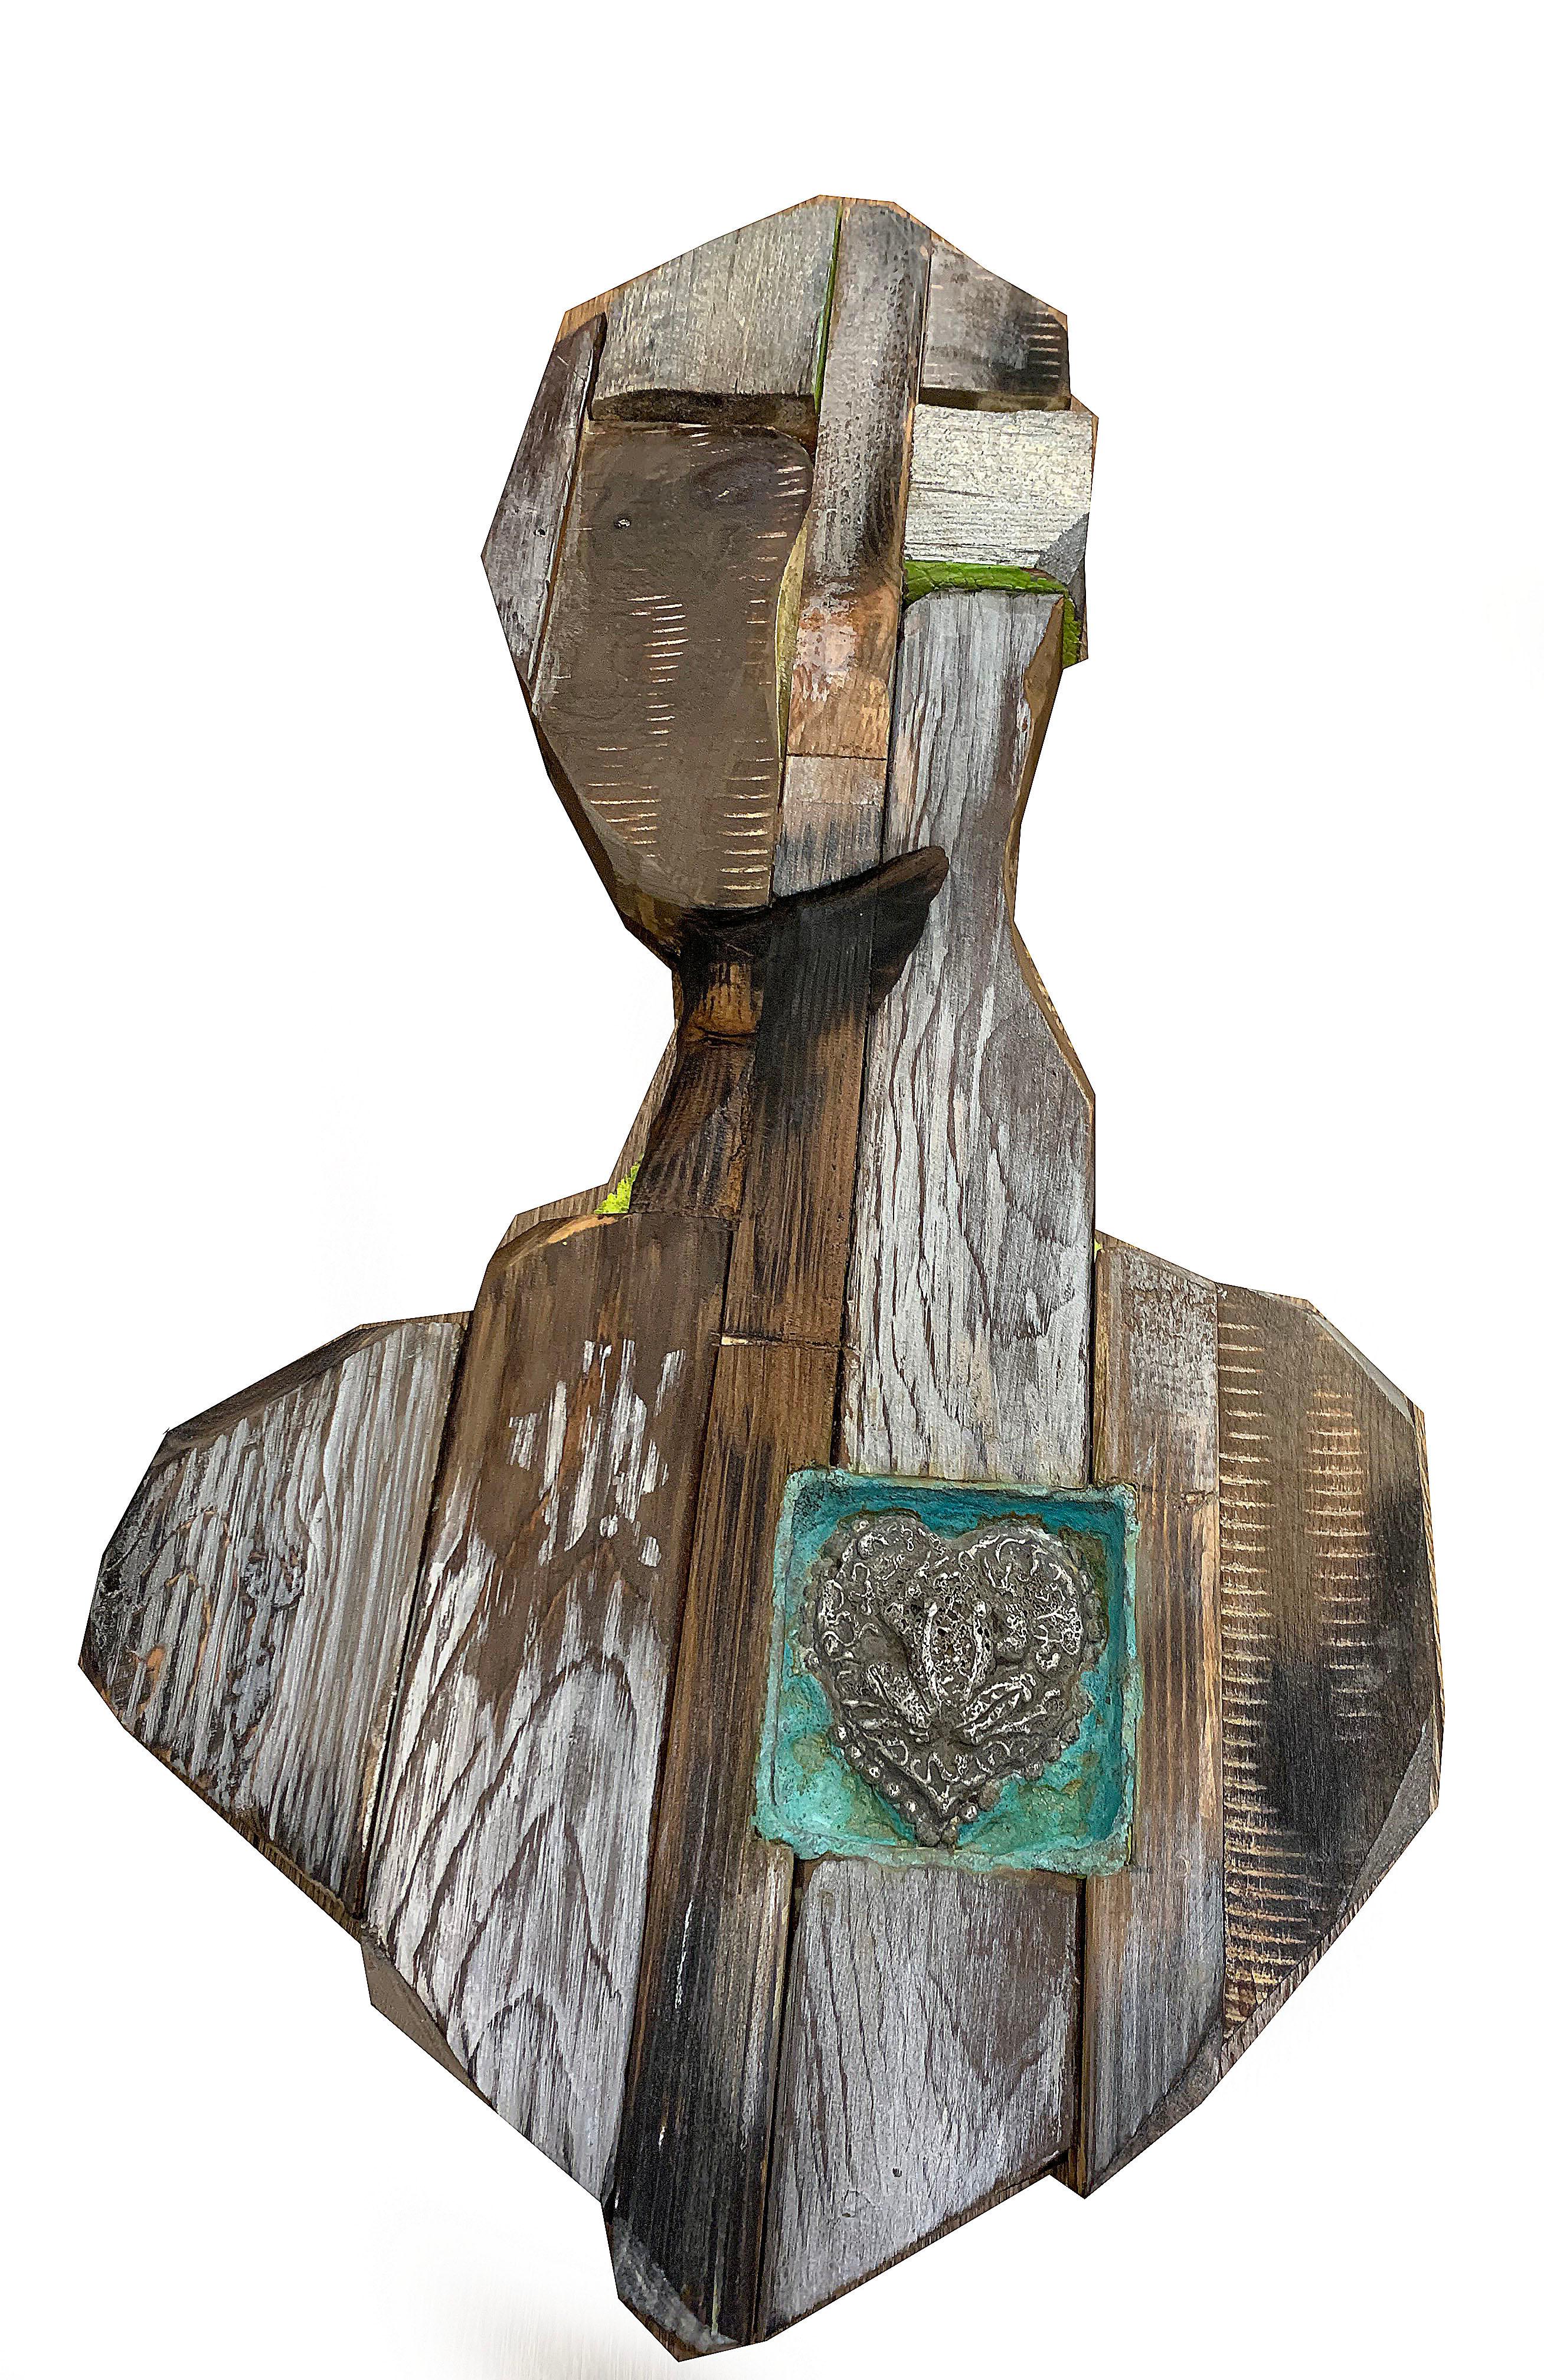 Chris Reilly Figurative Sculpture - Frog Heart II